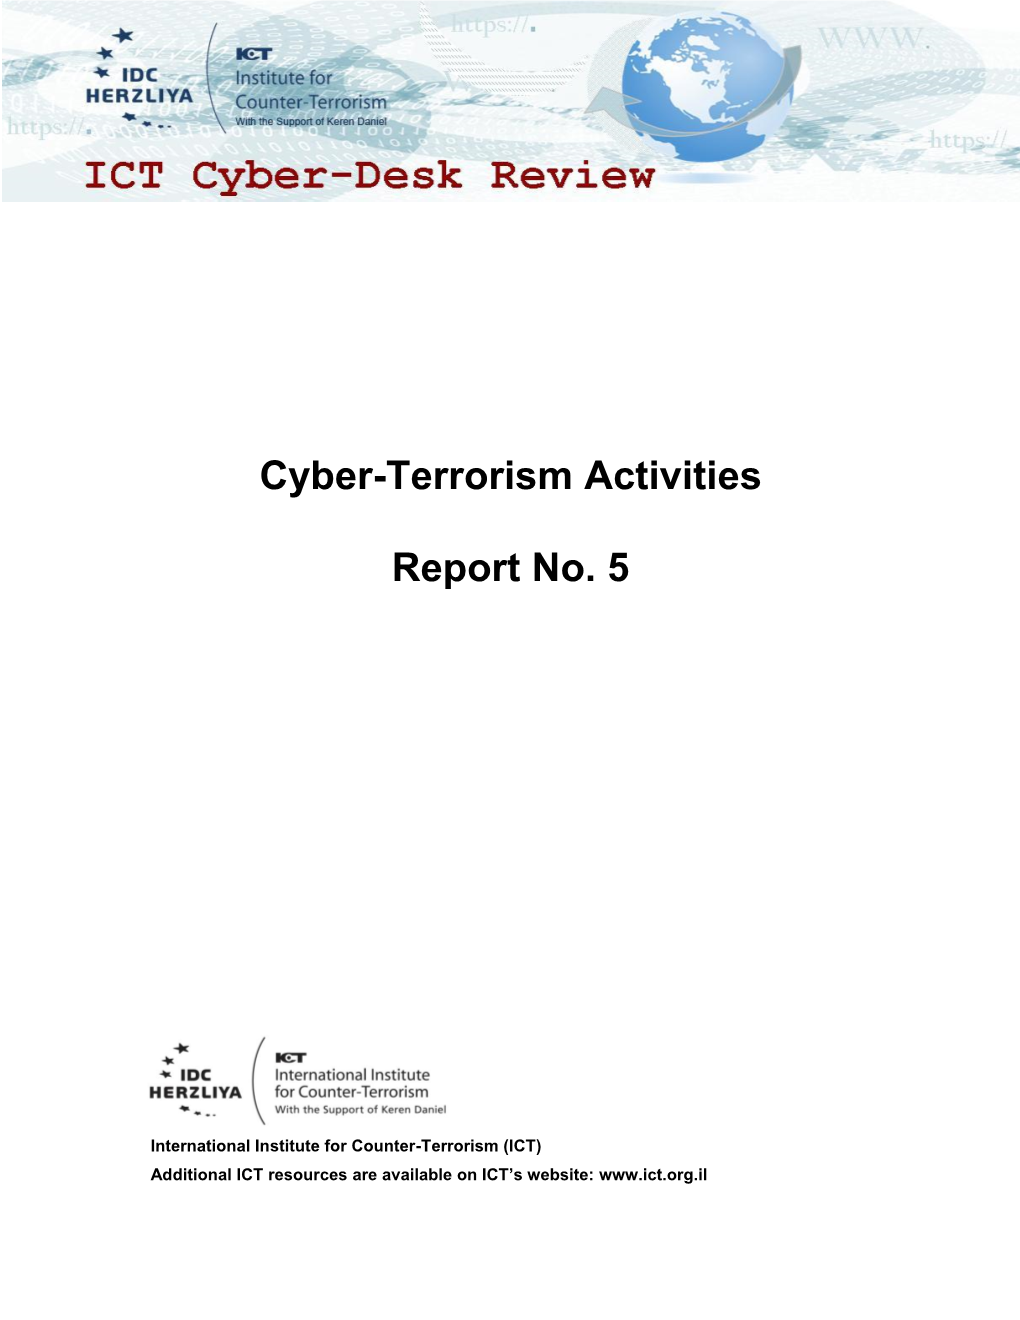 Cyber-Terrorism Activities